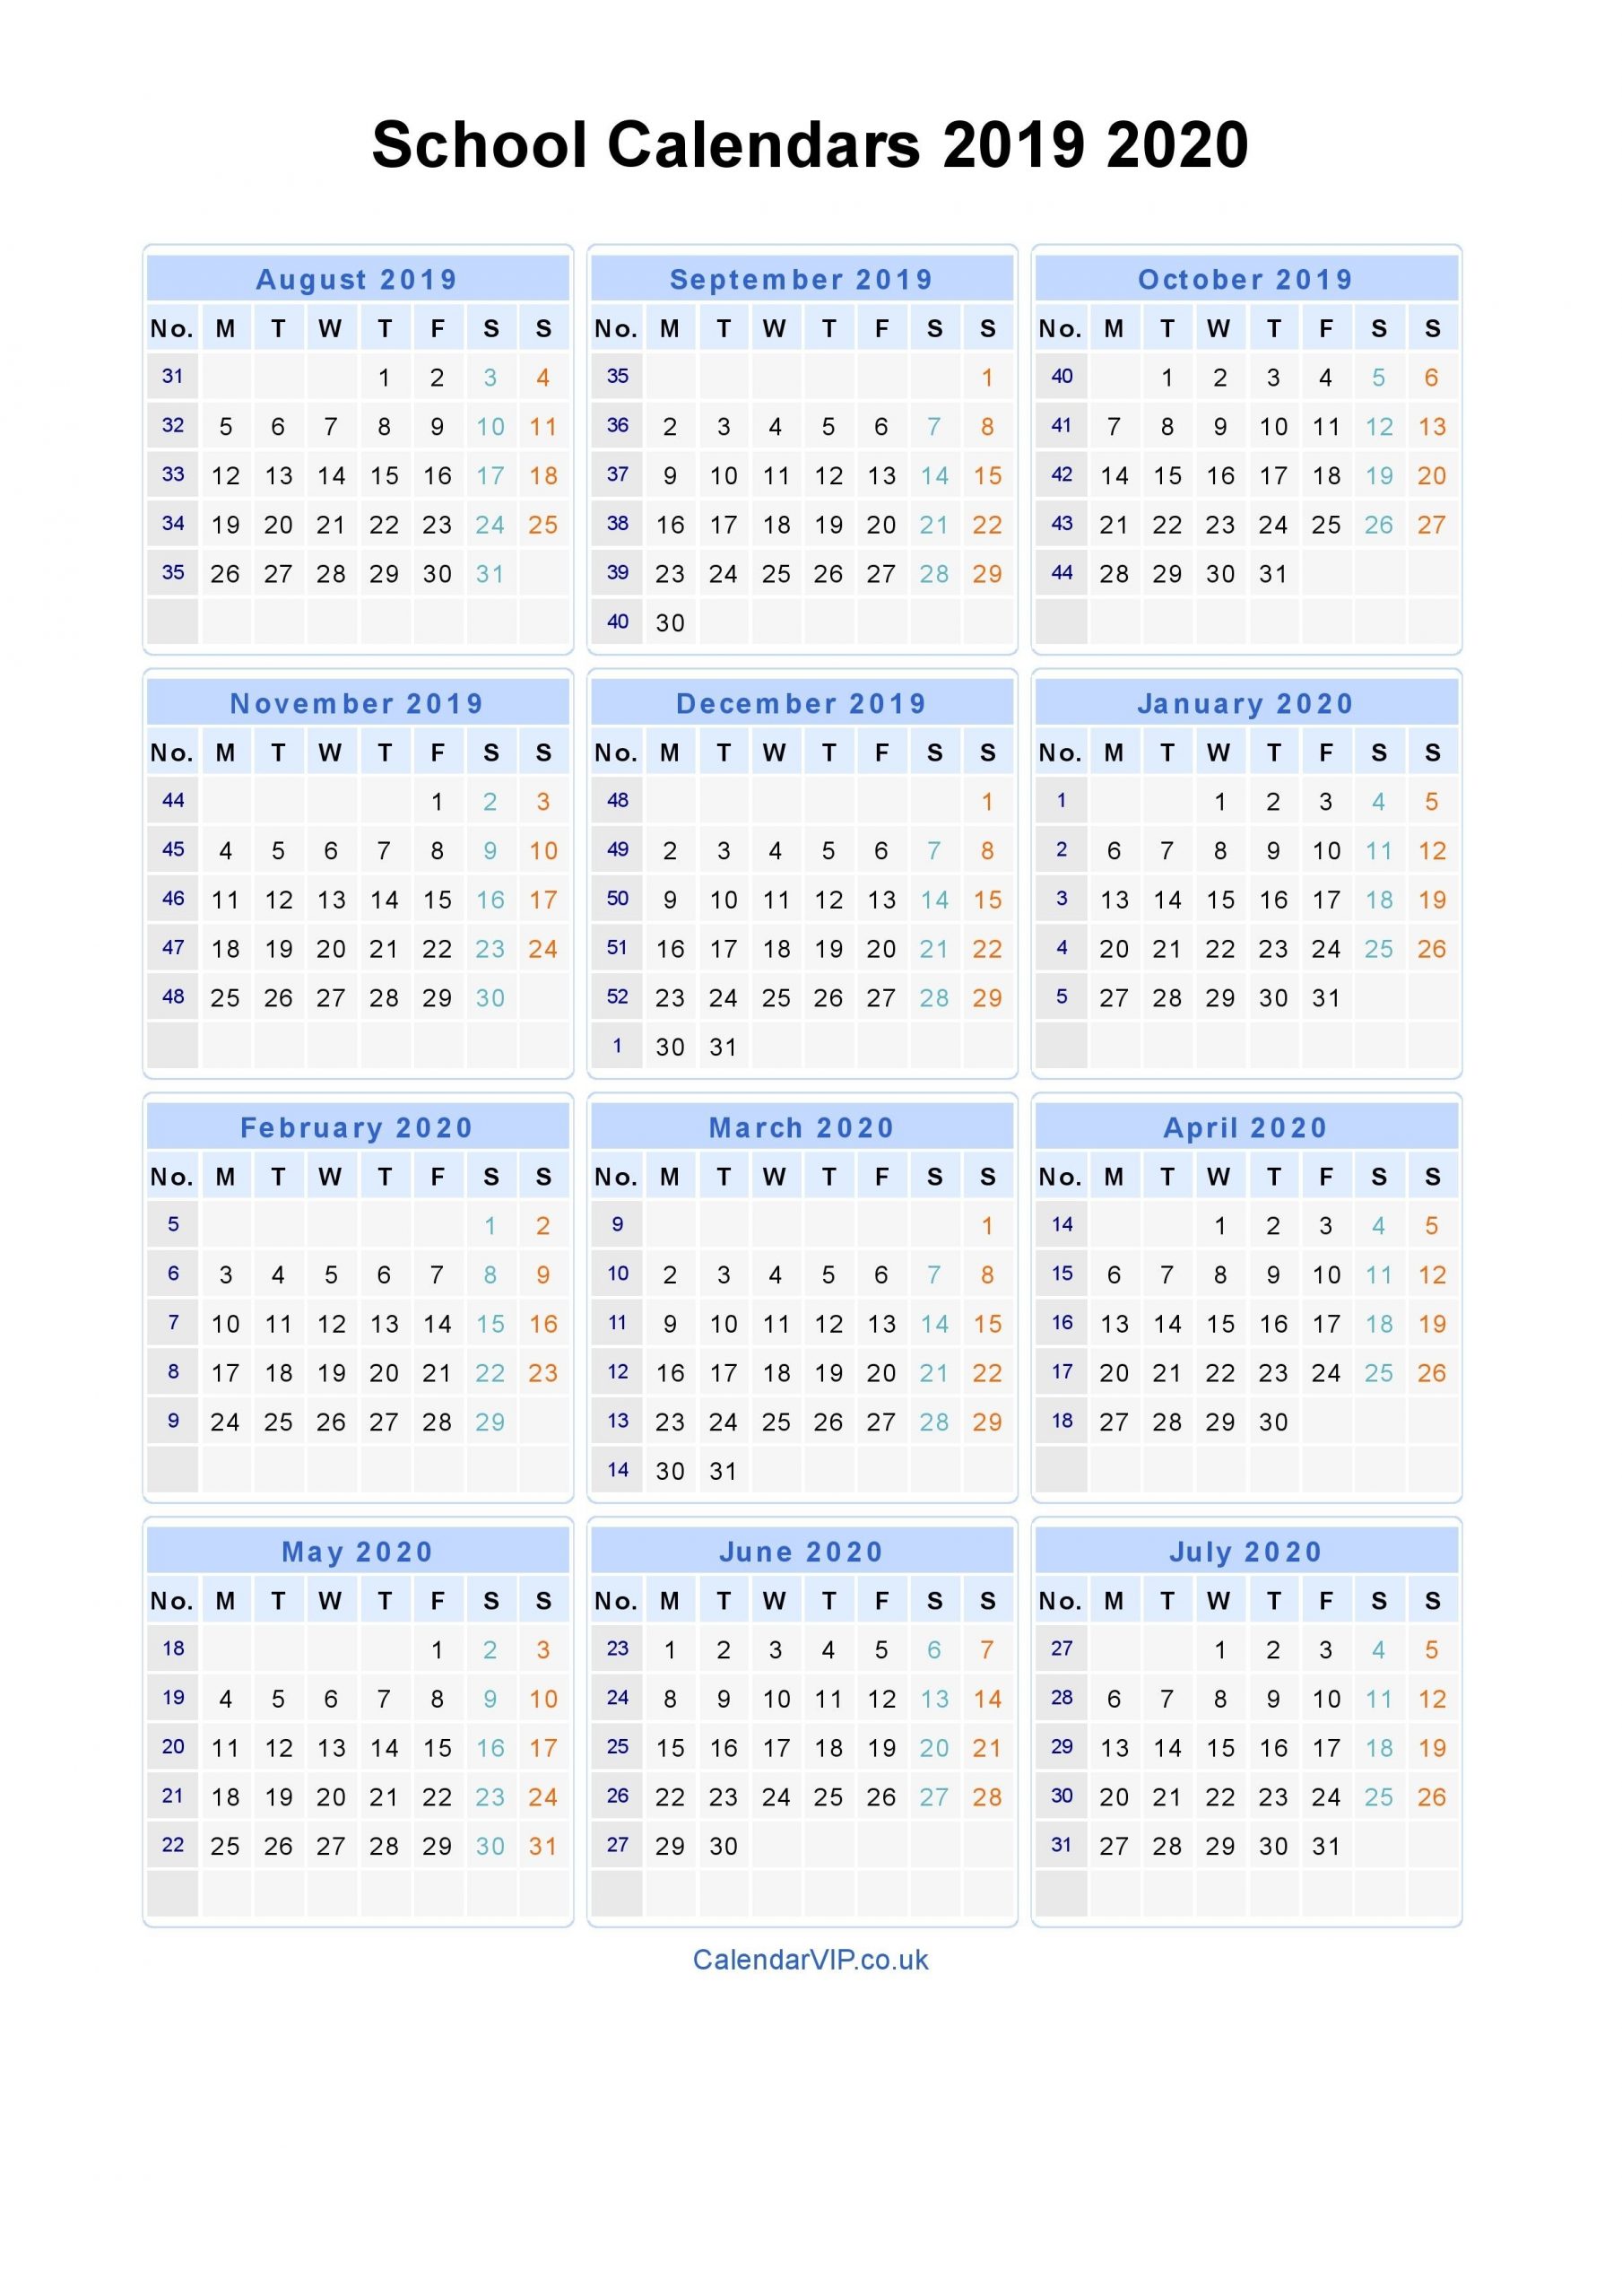 School Calendars 2019 2020 - Calendar From August 2019 To